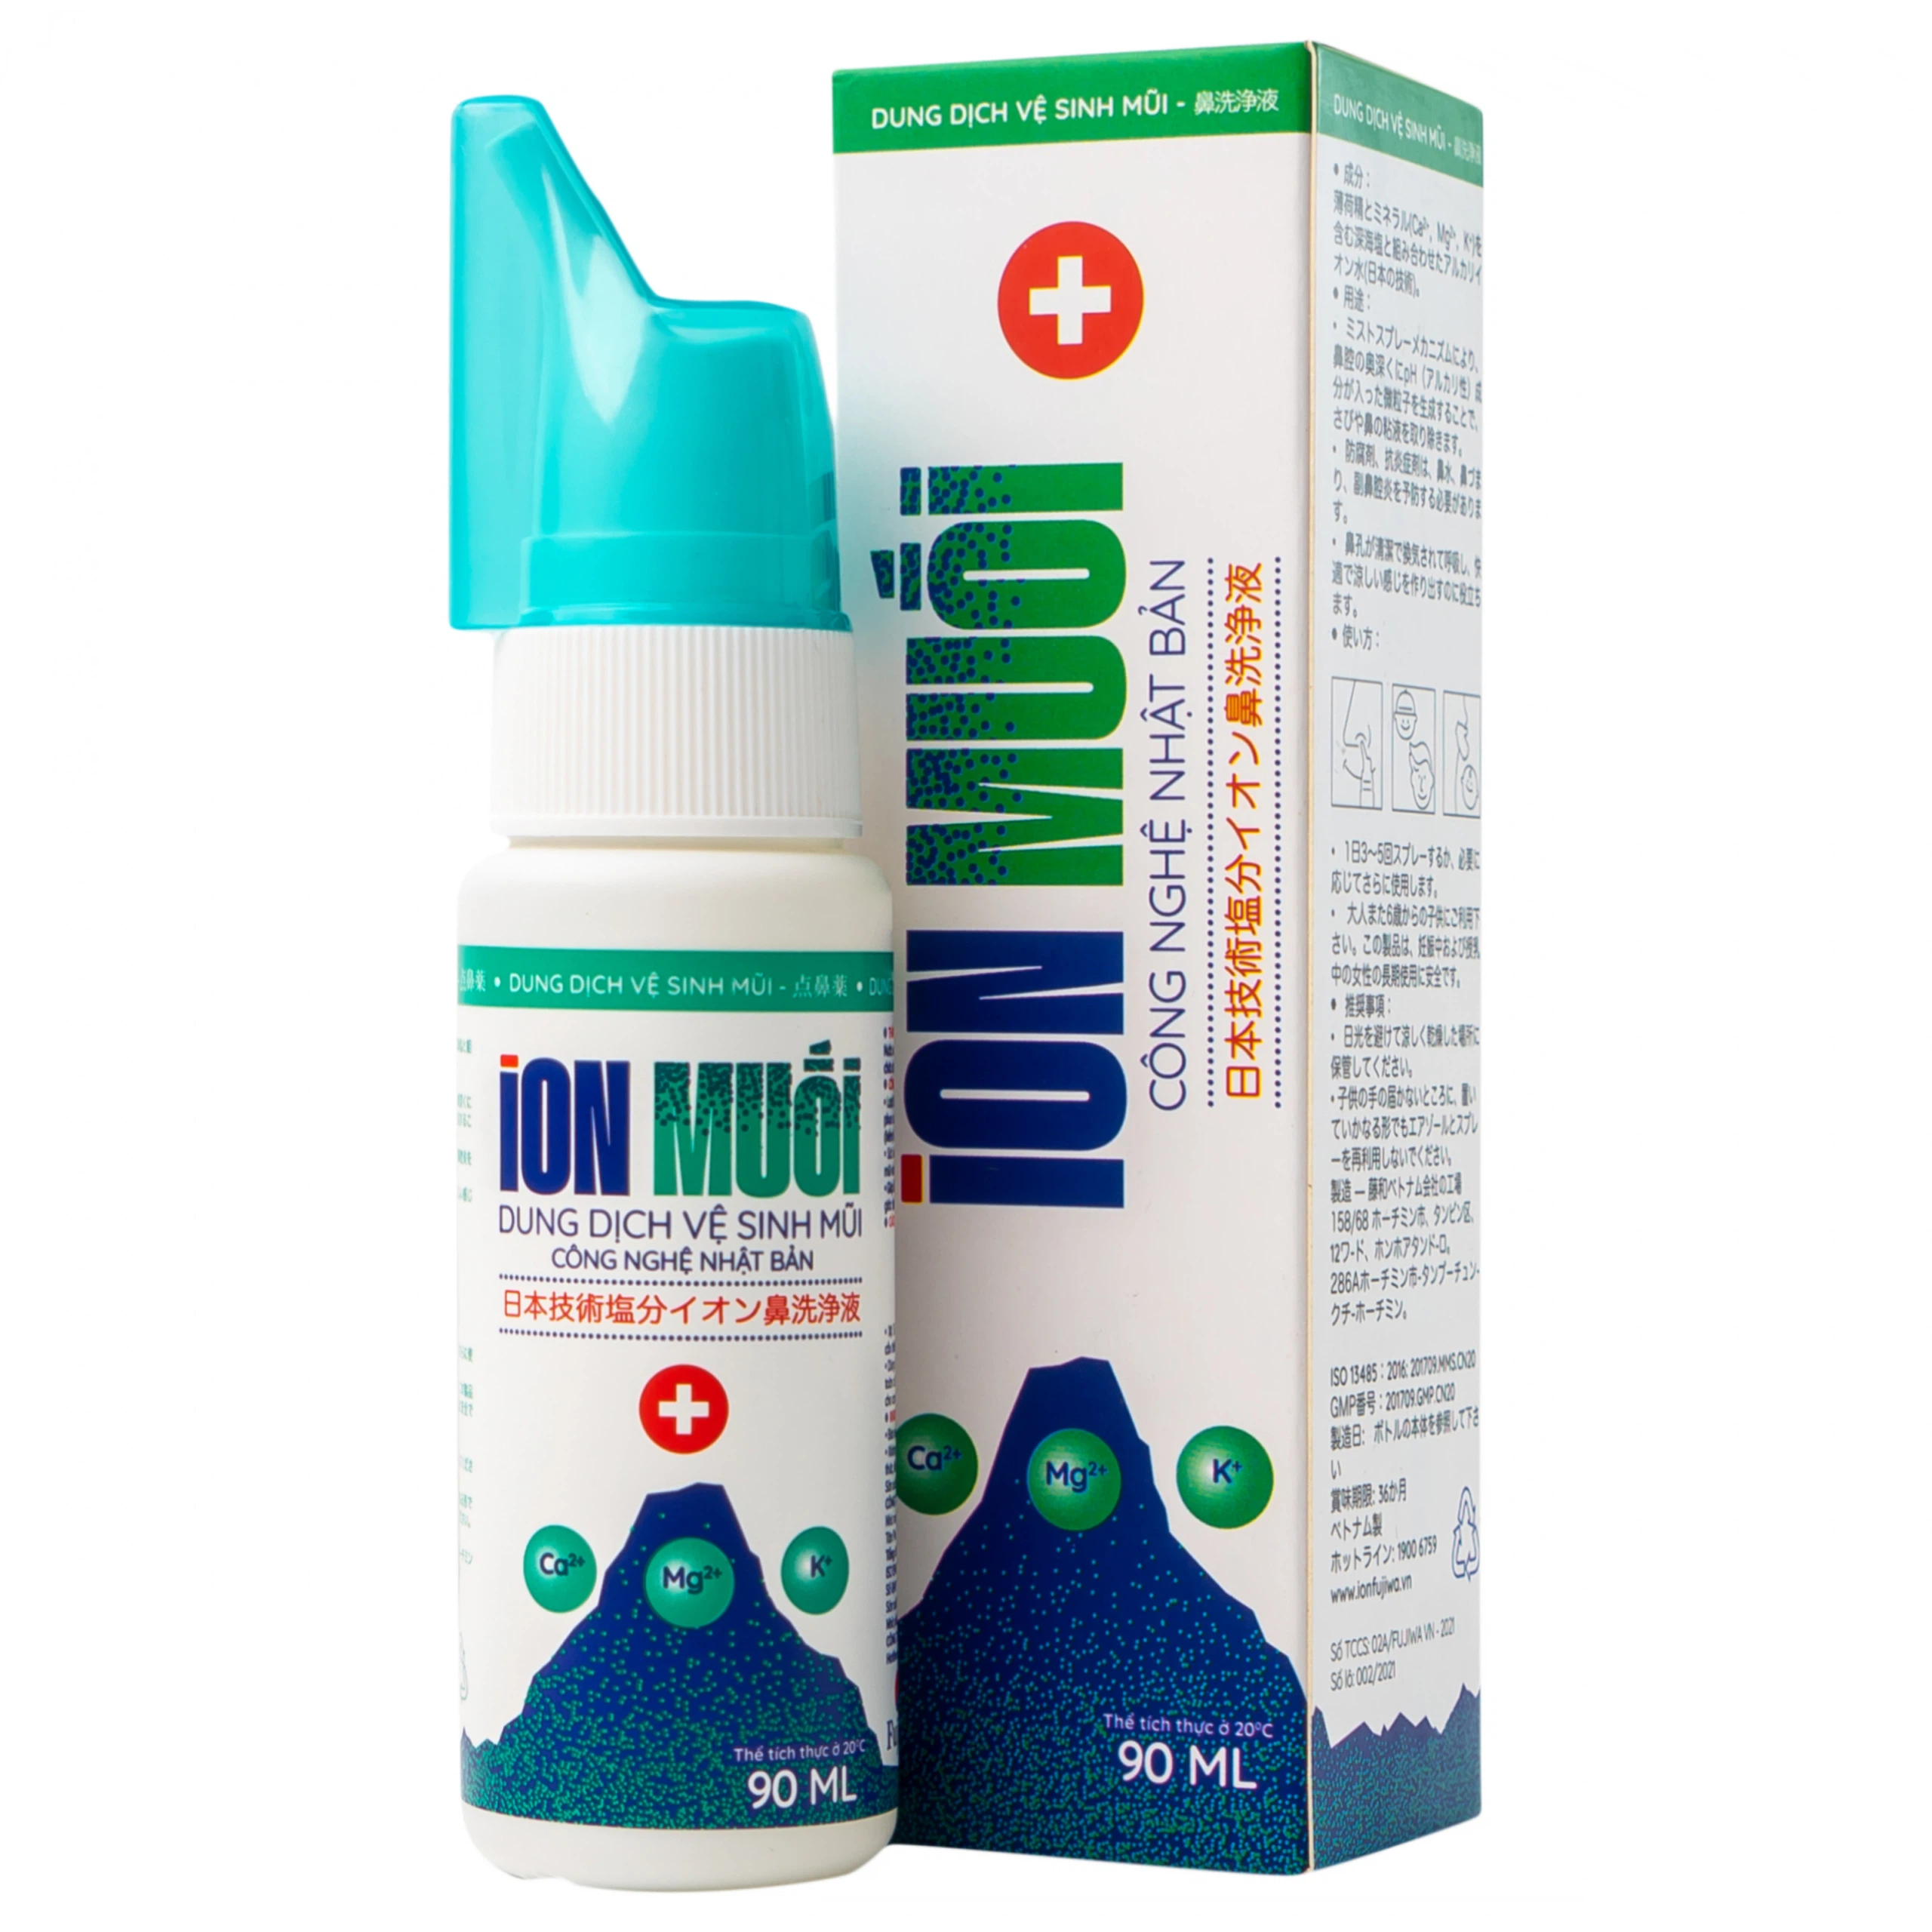 Dung dịch vệ sinh mũi ION Muối hỗ trợ sát khuẩn, kháng viêm, phòng ngừa sổ mũi (90ml)